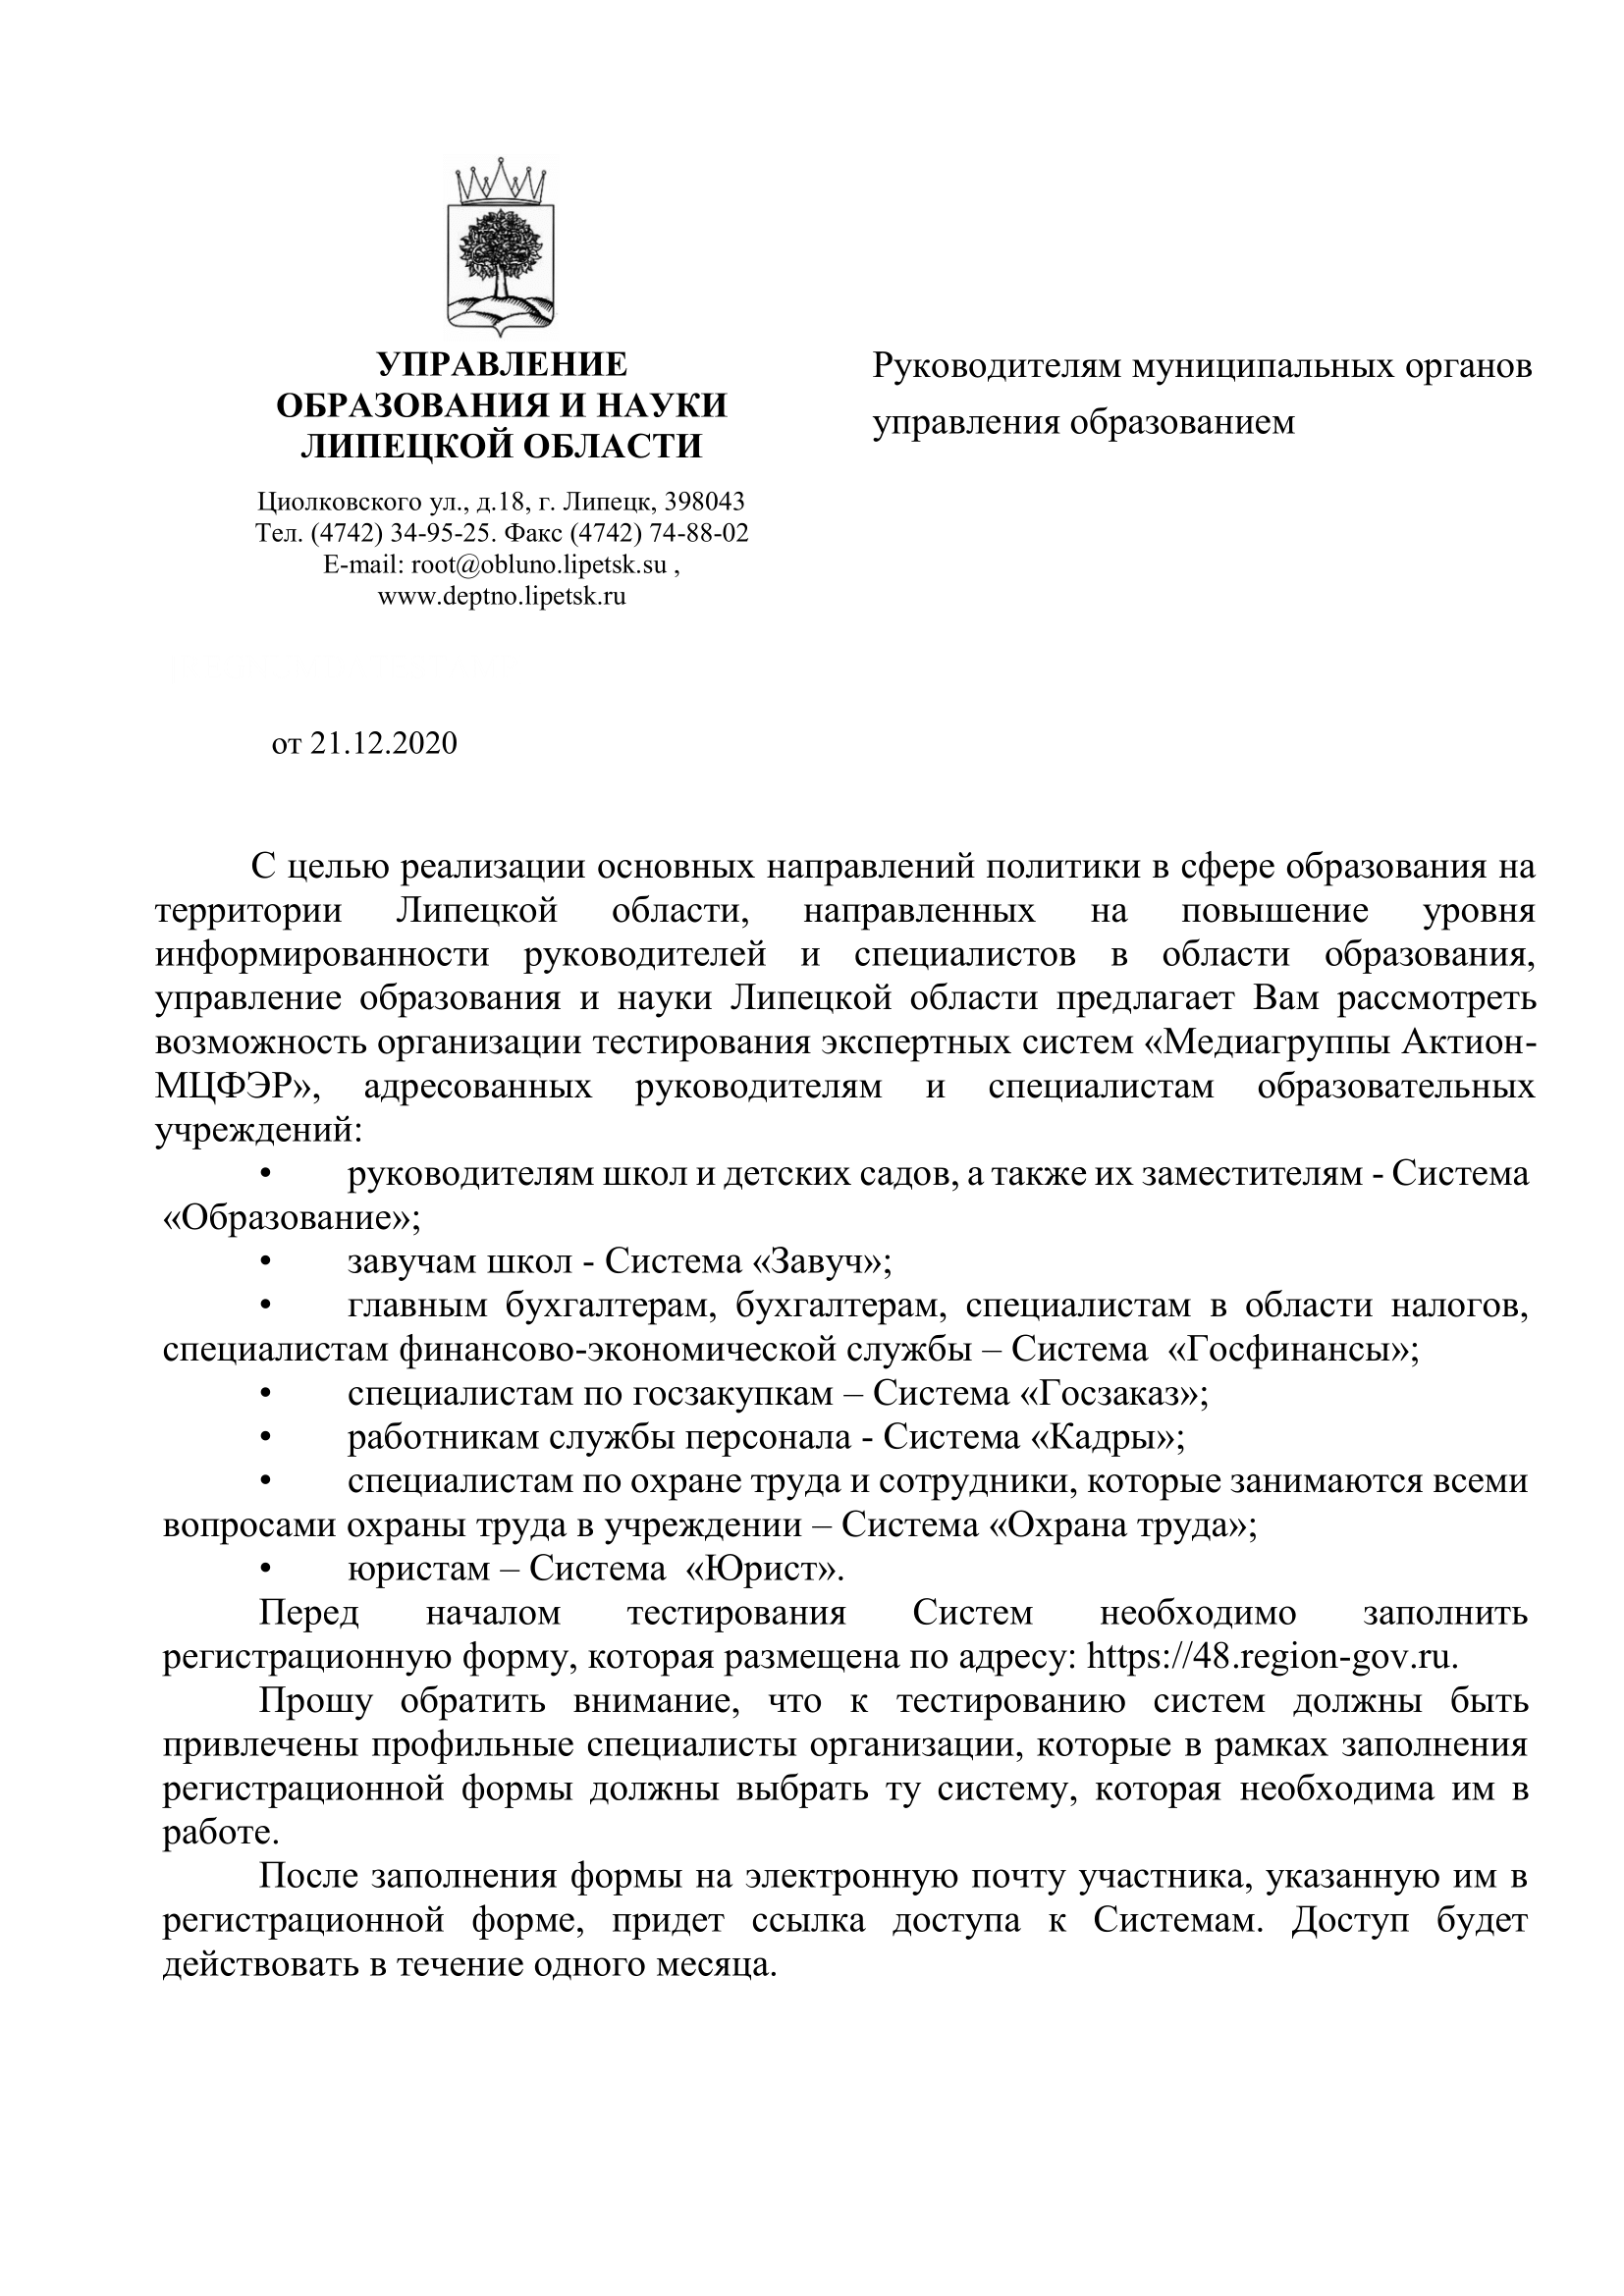 Письмо Управления образования и науки Липецкой области 21.12.2021 г., б/н